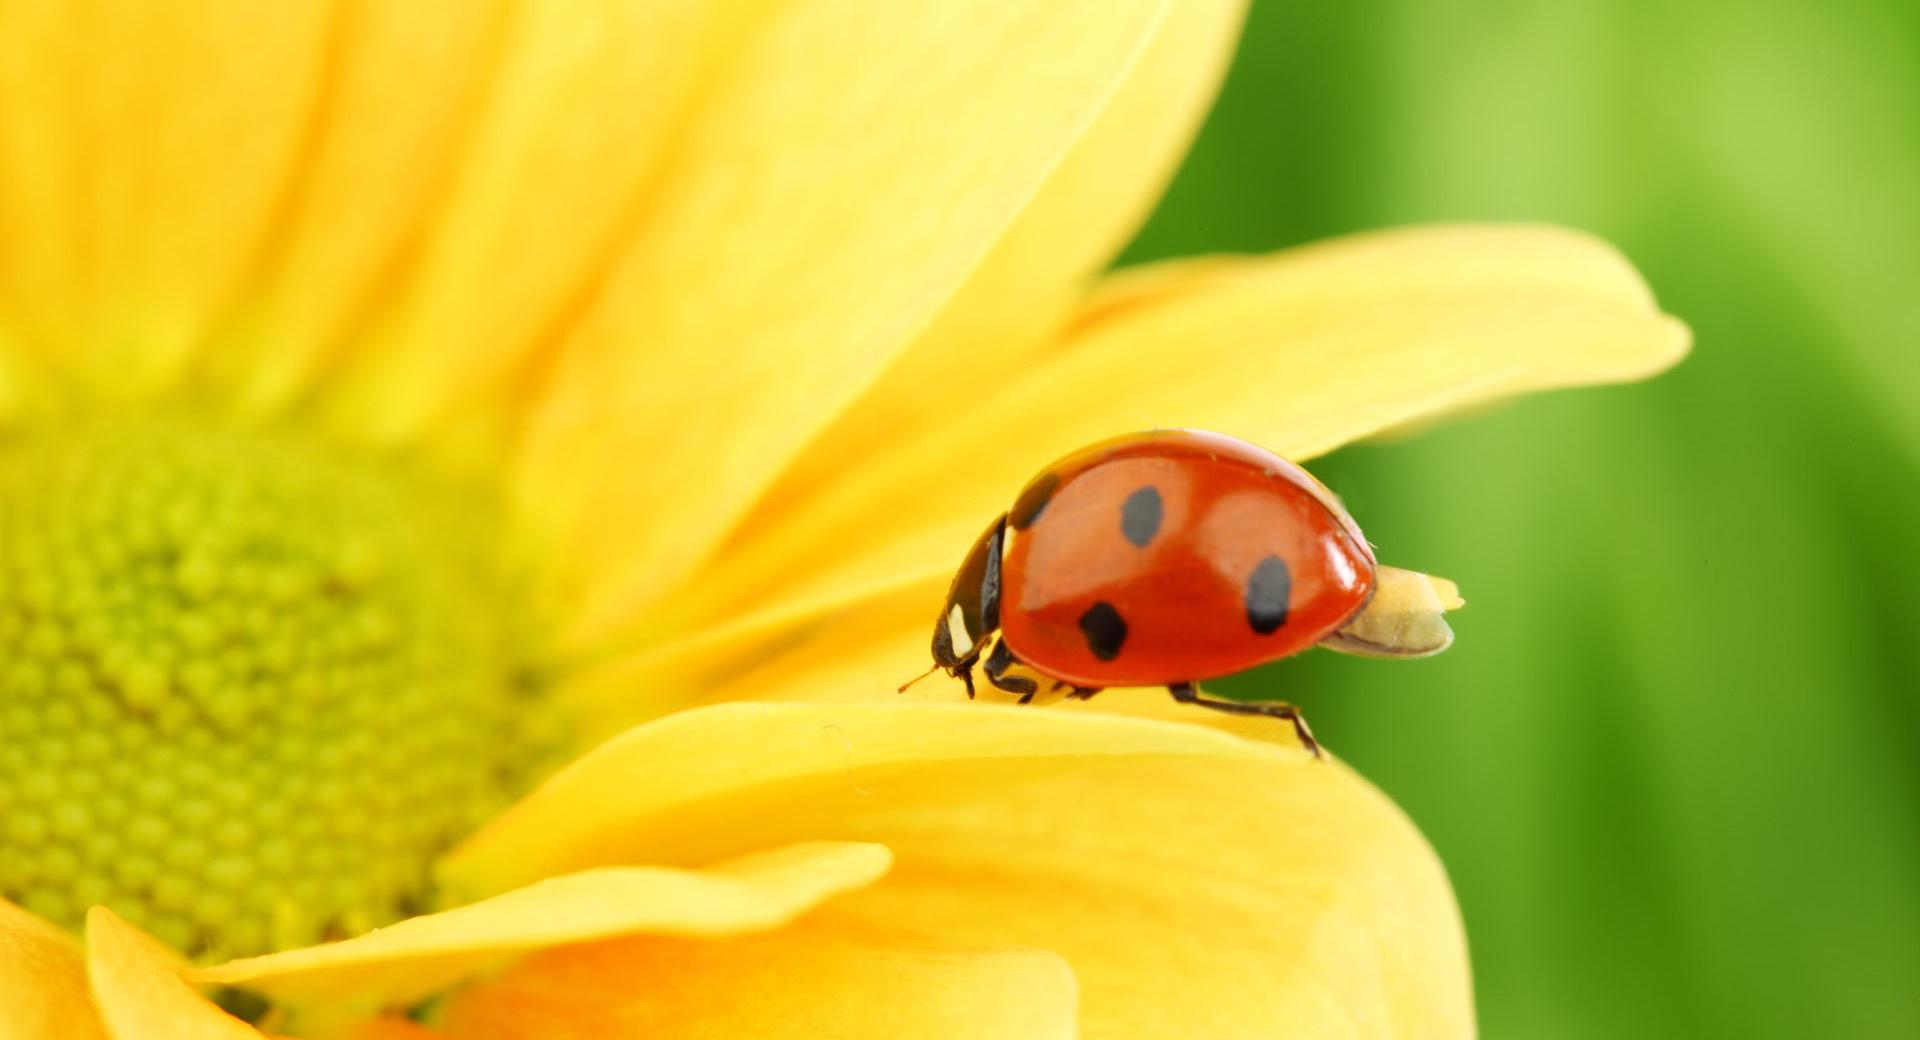 Ladybug On Yellow Flower, Macro wallpapers HD quality